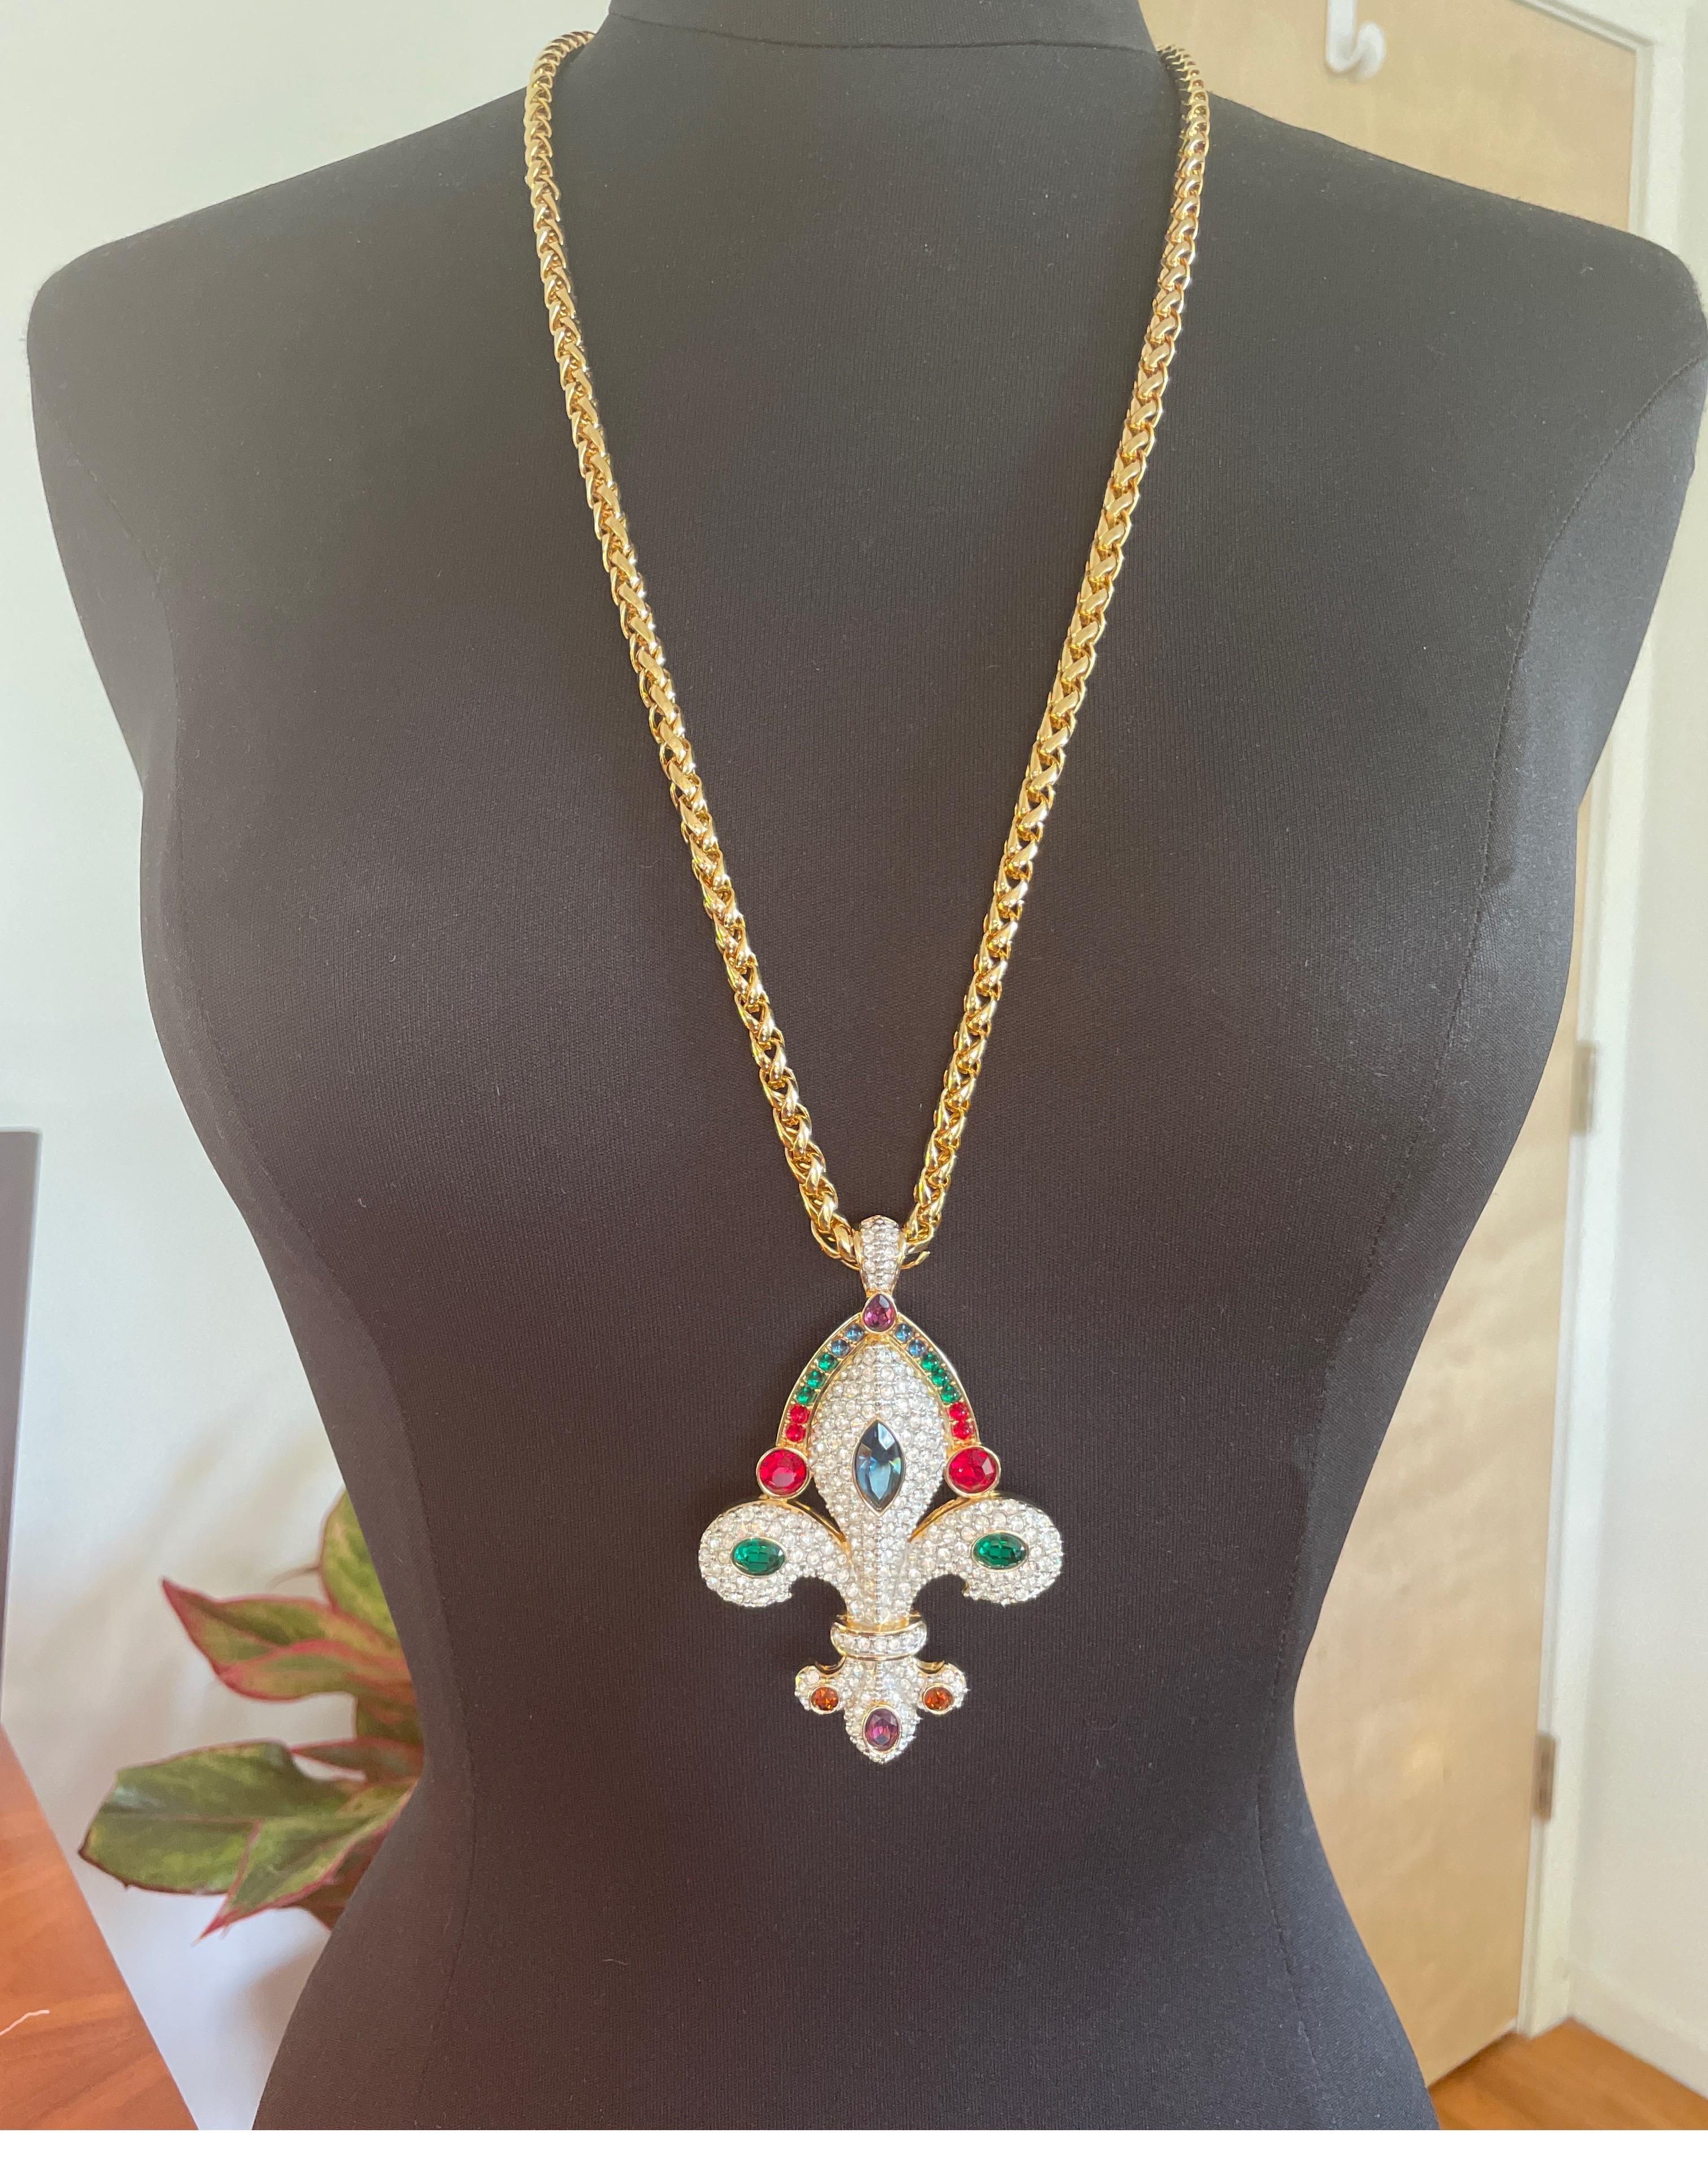 Women's  Swarovski Crystal Fleur De Lis Pendant Necklace, New Never Worn 1990s For Sale